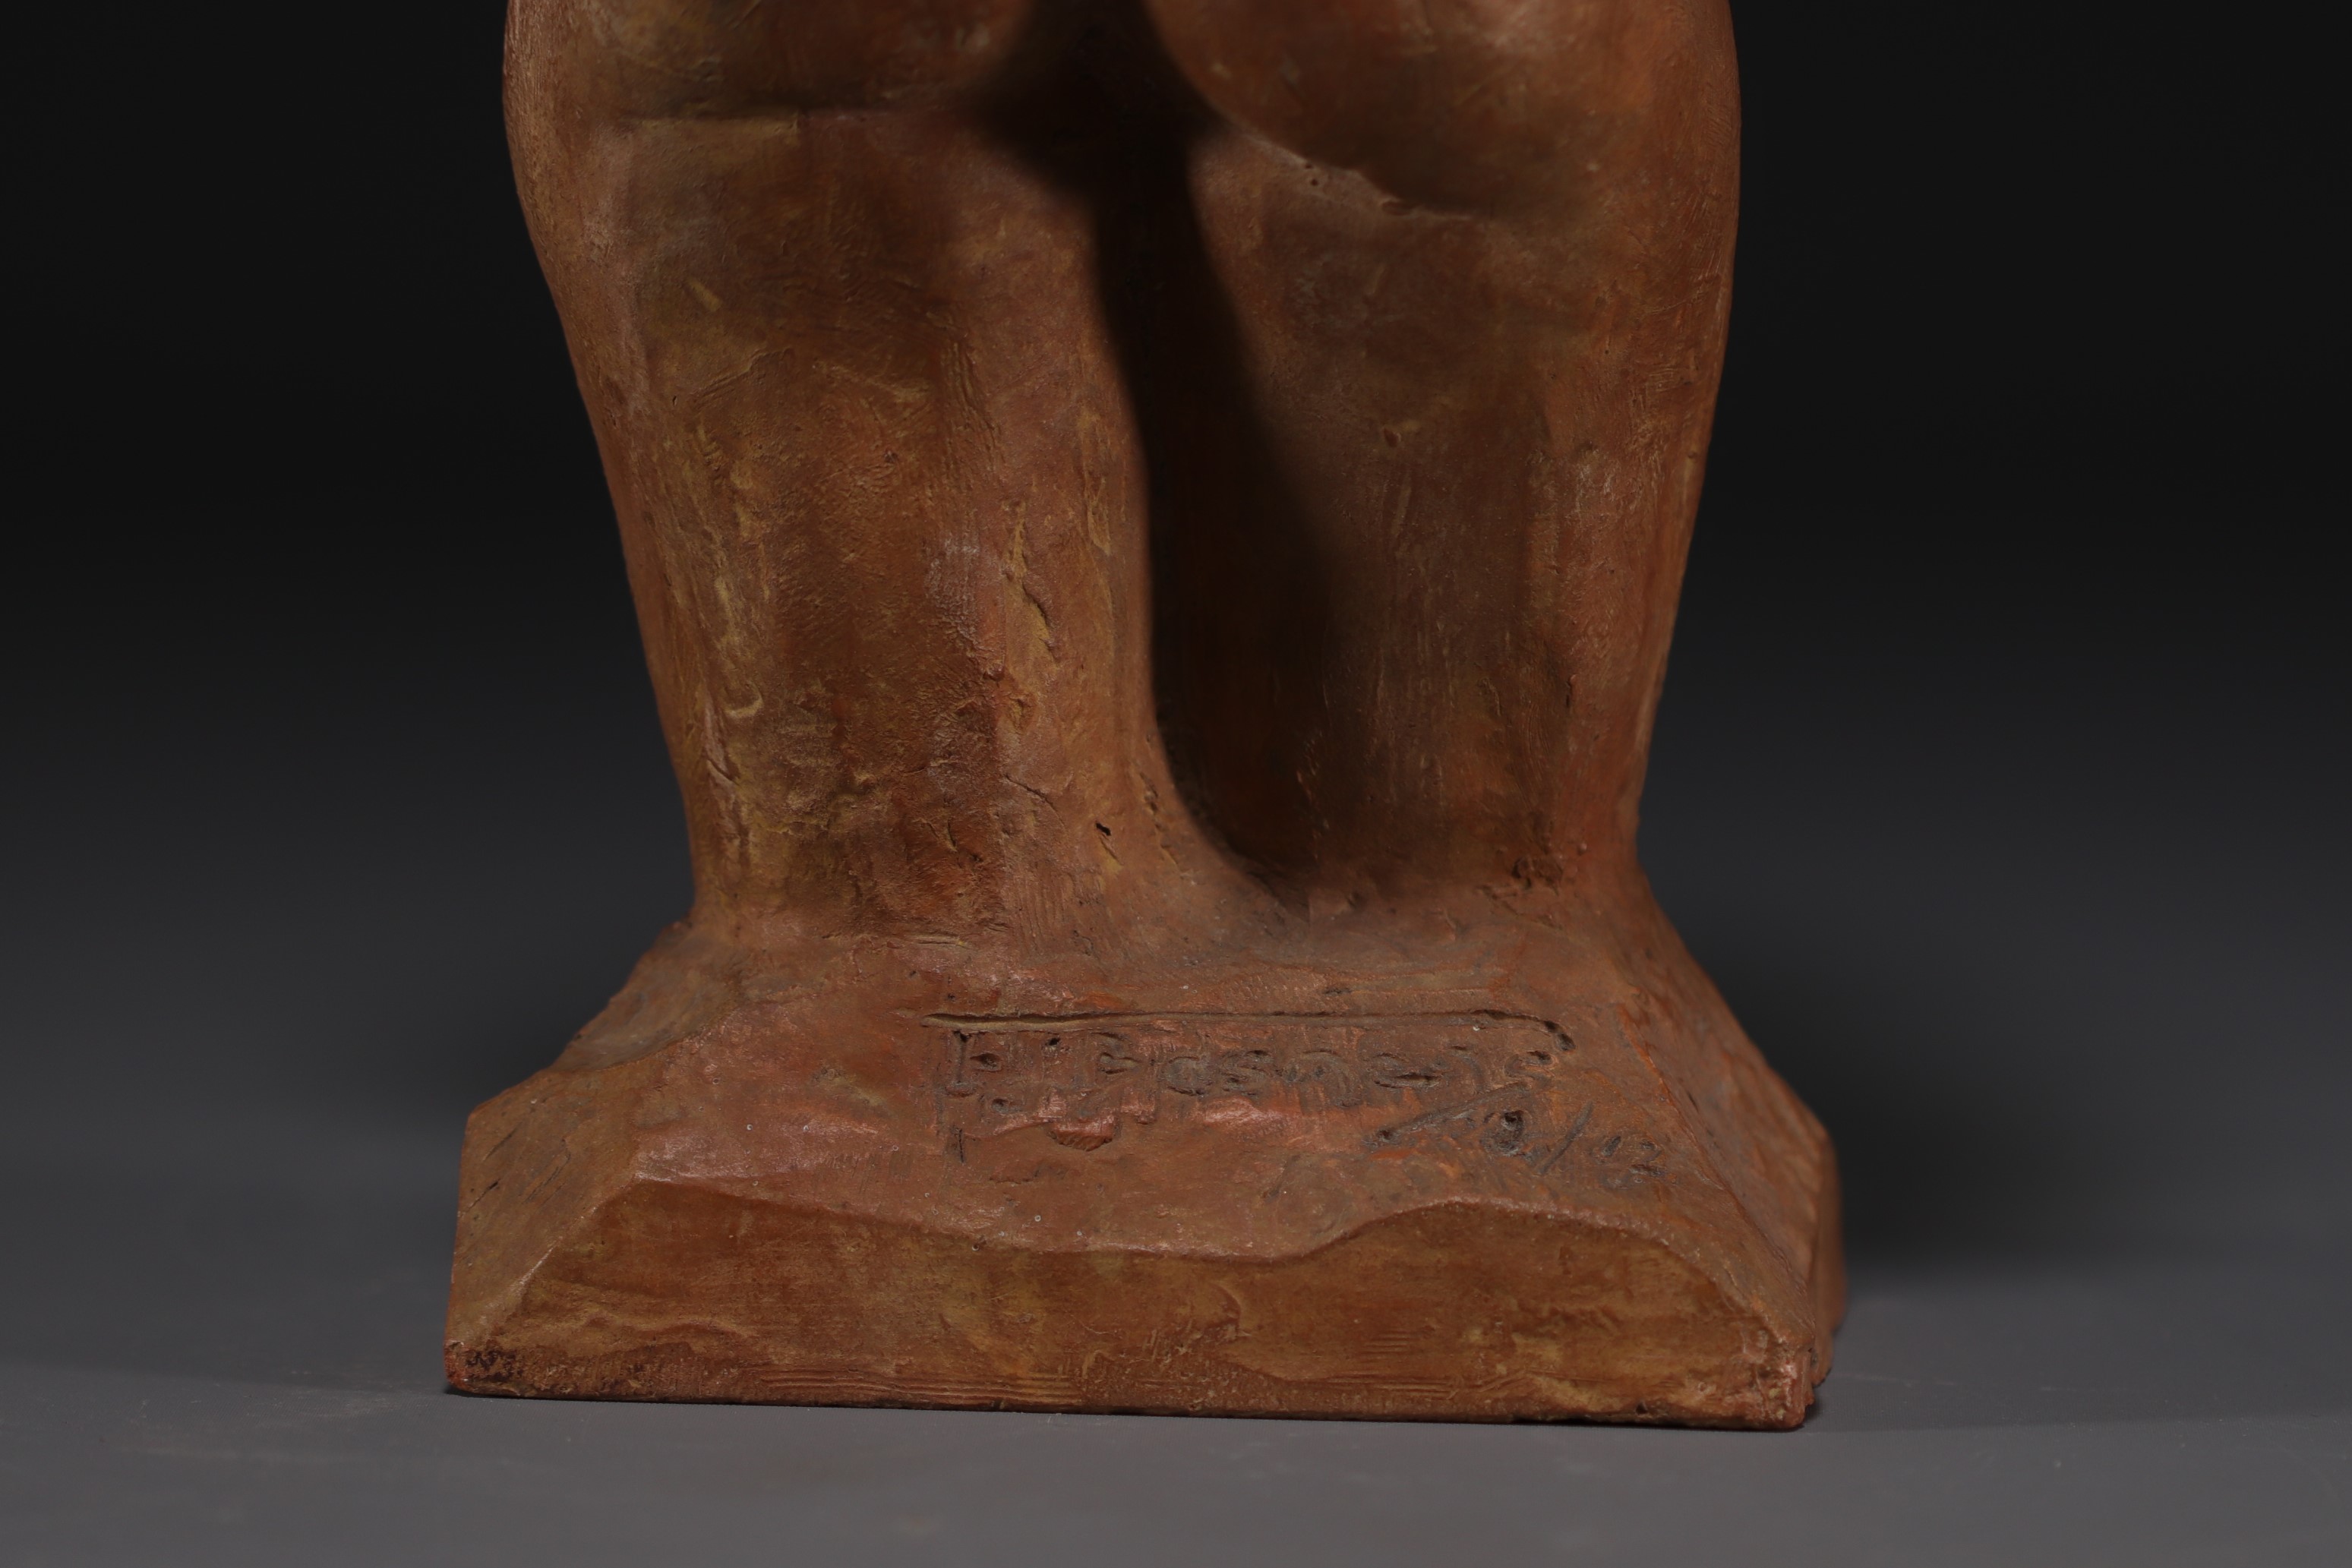 Francois julien BOSMANS (1908-1977) "Buste de femme" Terracotta sculpture. - Image 5 of 5